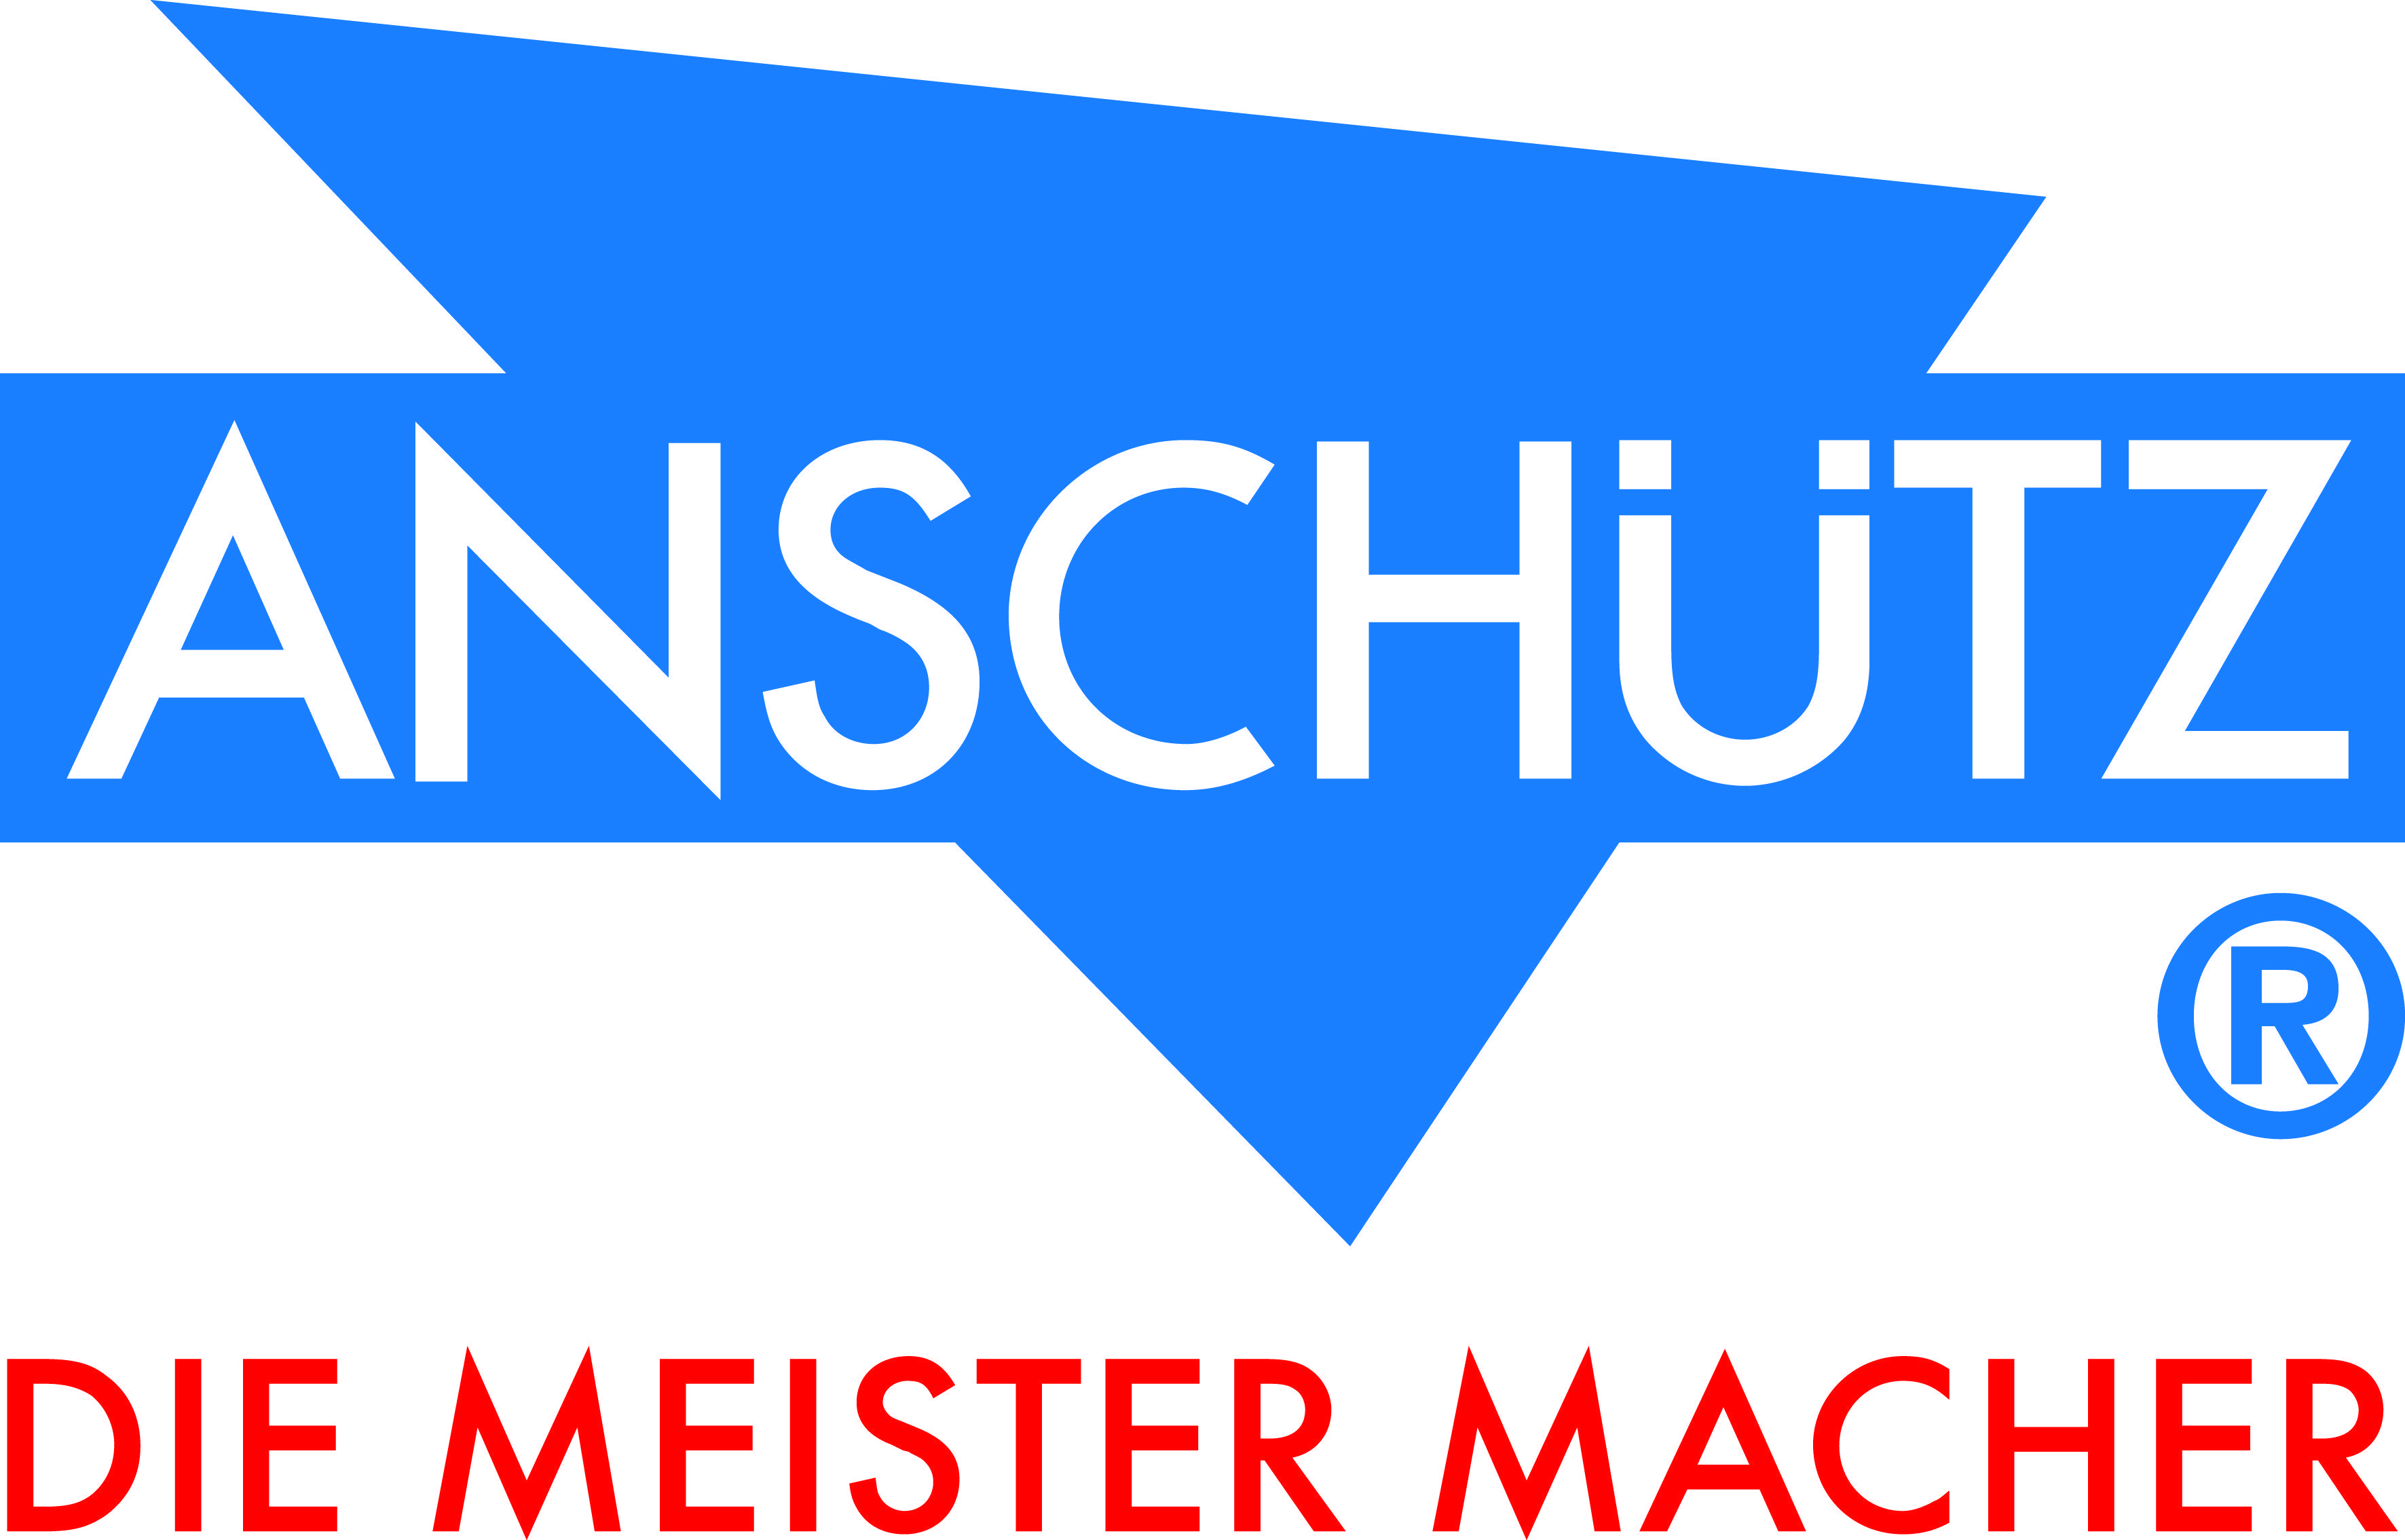 Anschuetz Logo - J.G. ANSCHÜTZ GmbH & Co. KG - Logo Downloads